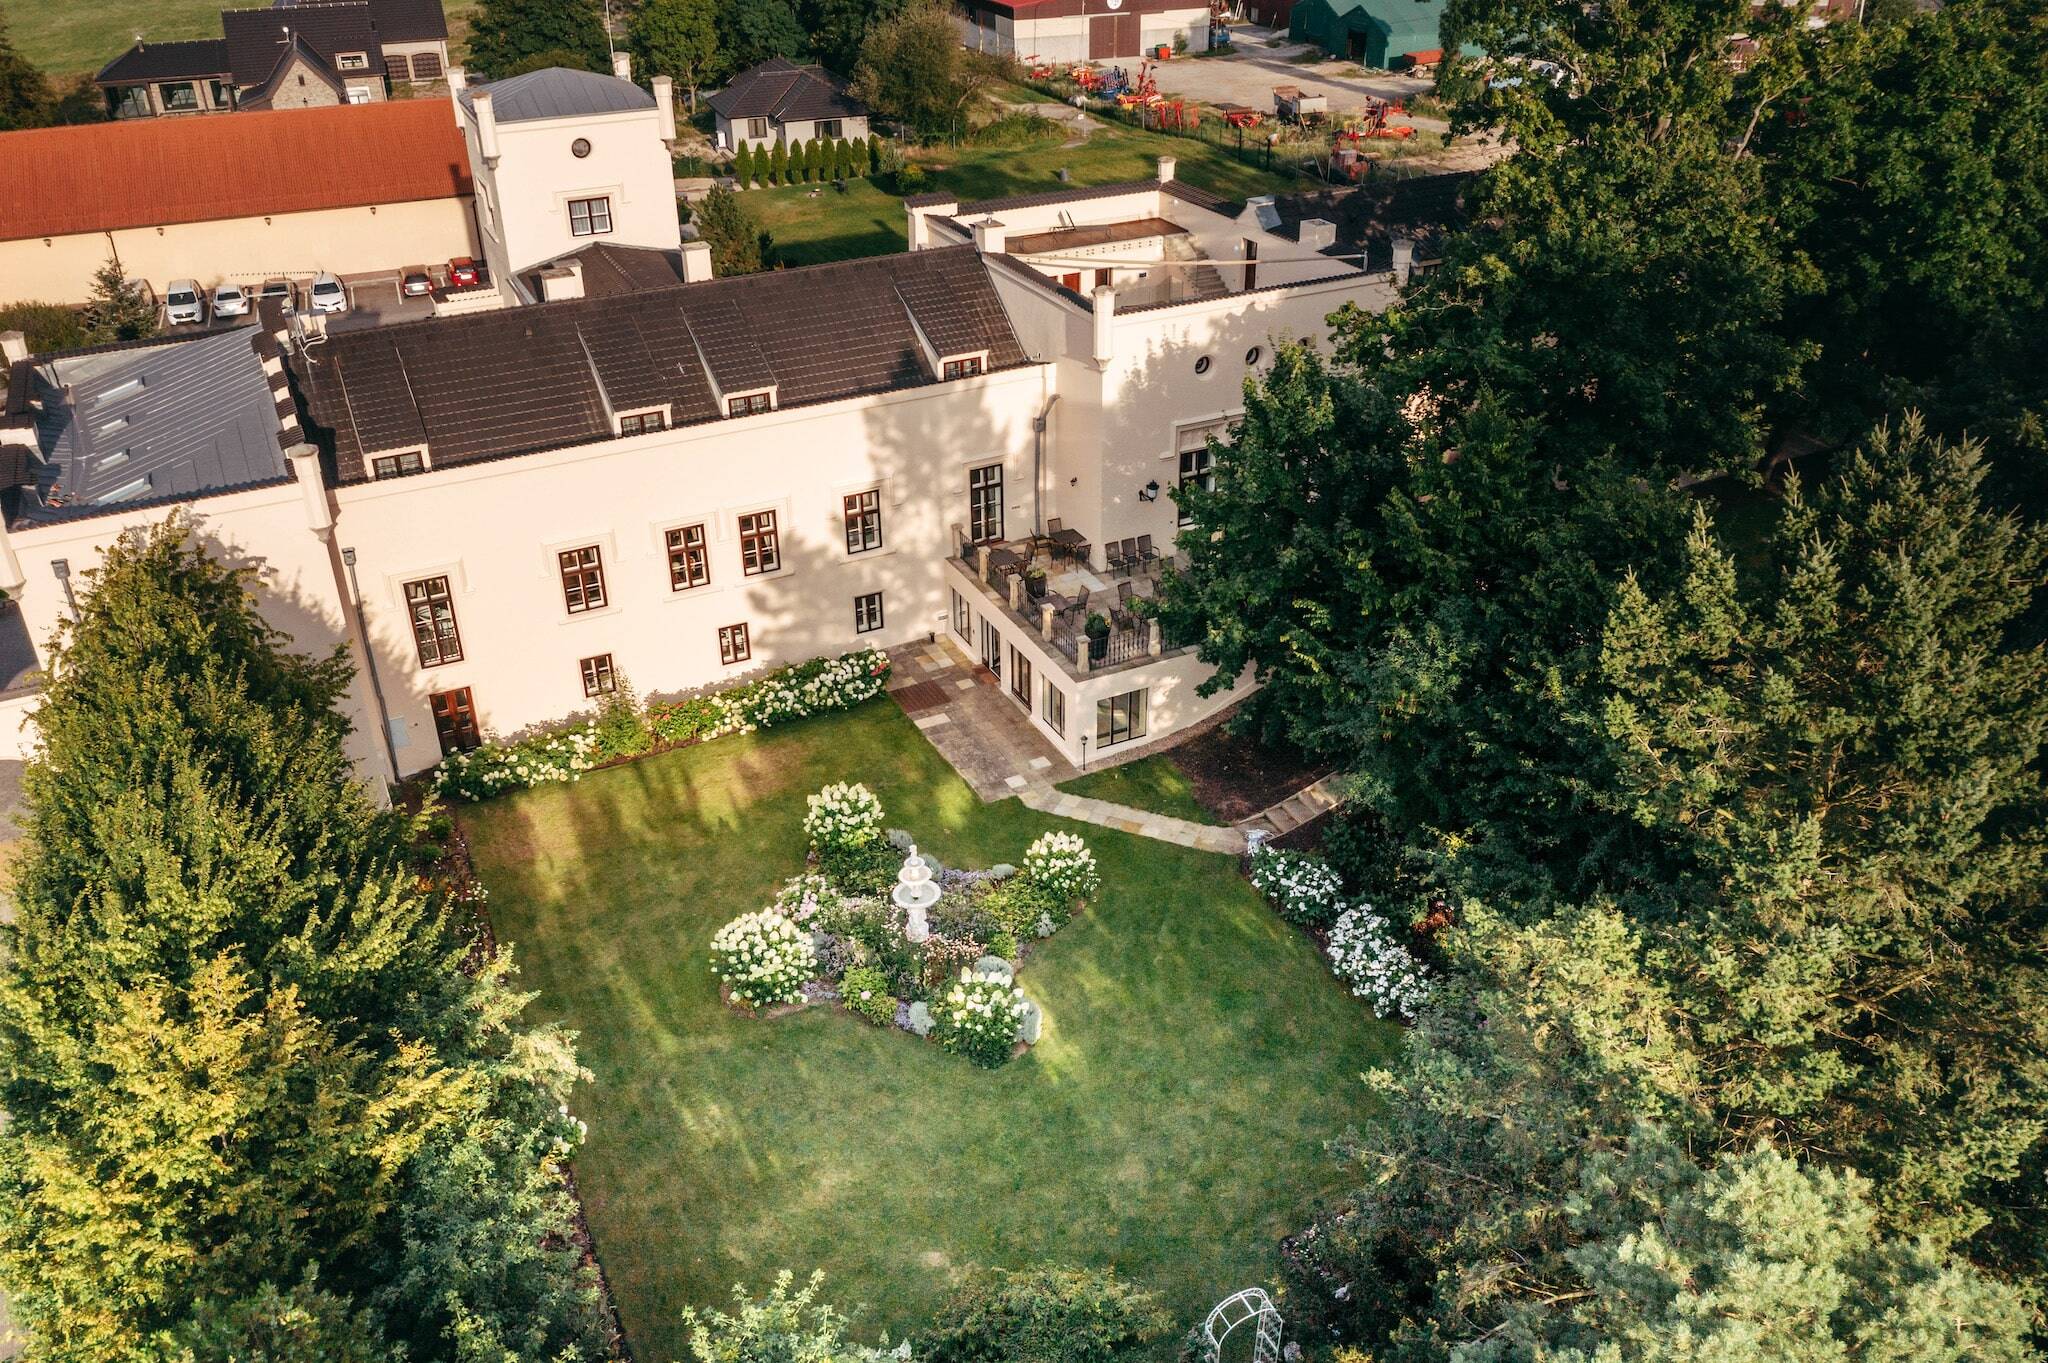 Сады и фонтан в замке Трнова - Замок Трнова под Прагой